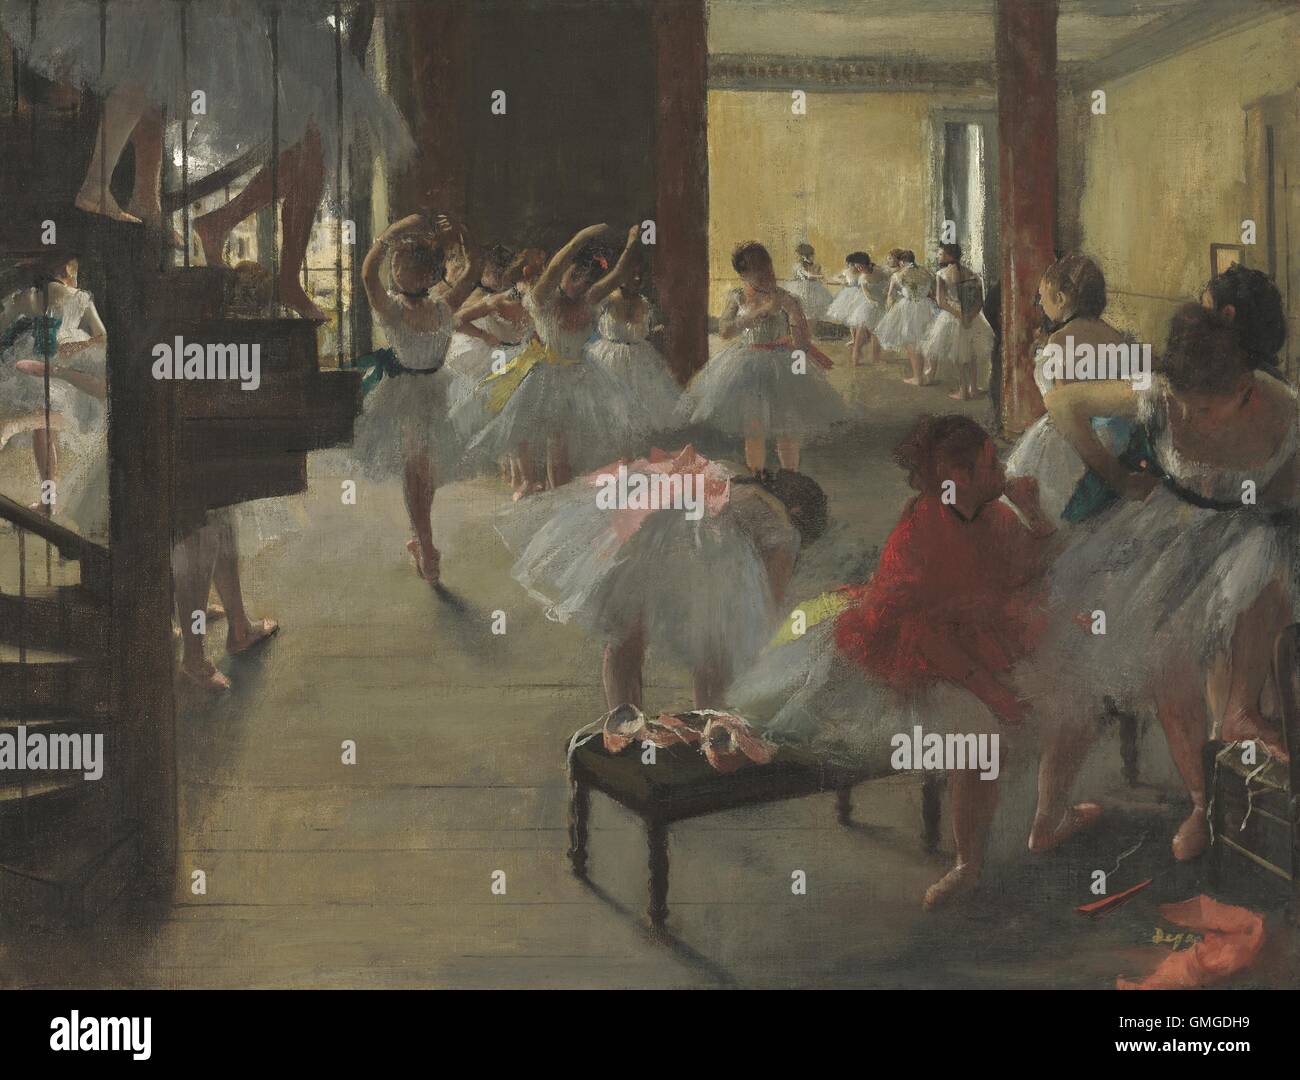 La classe di danza, di Edgar Degas, 1873, impressionista francese pittura, olio su tela. In scena con i giovani ballerini al Teatro dell'Opera di Parigi (BSLOC 2016 5 158) Foto Stock